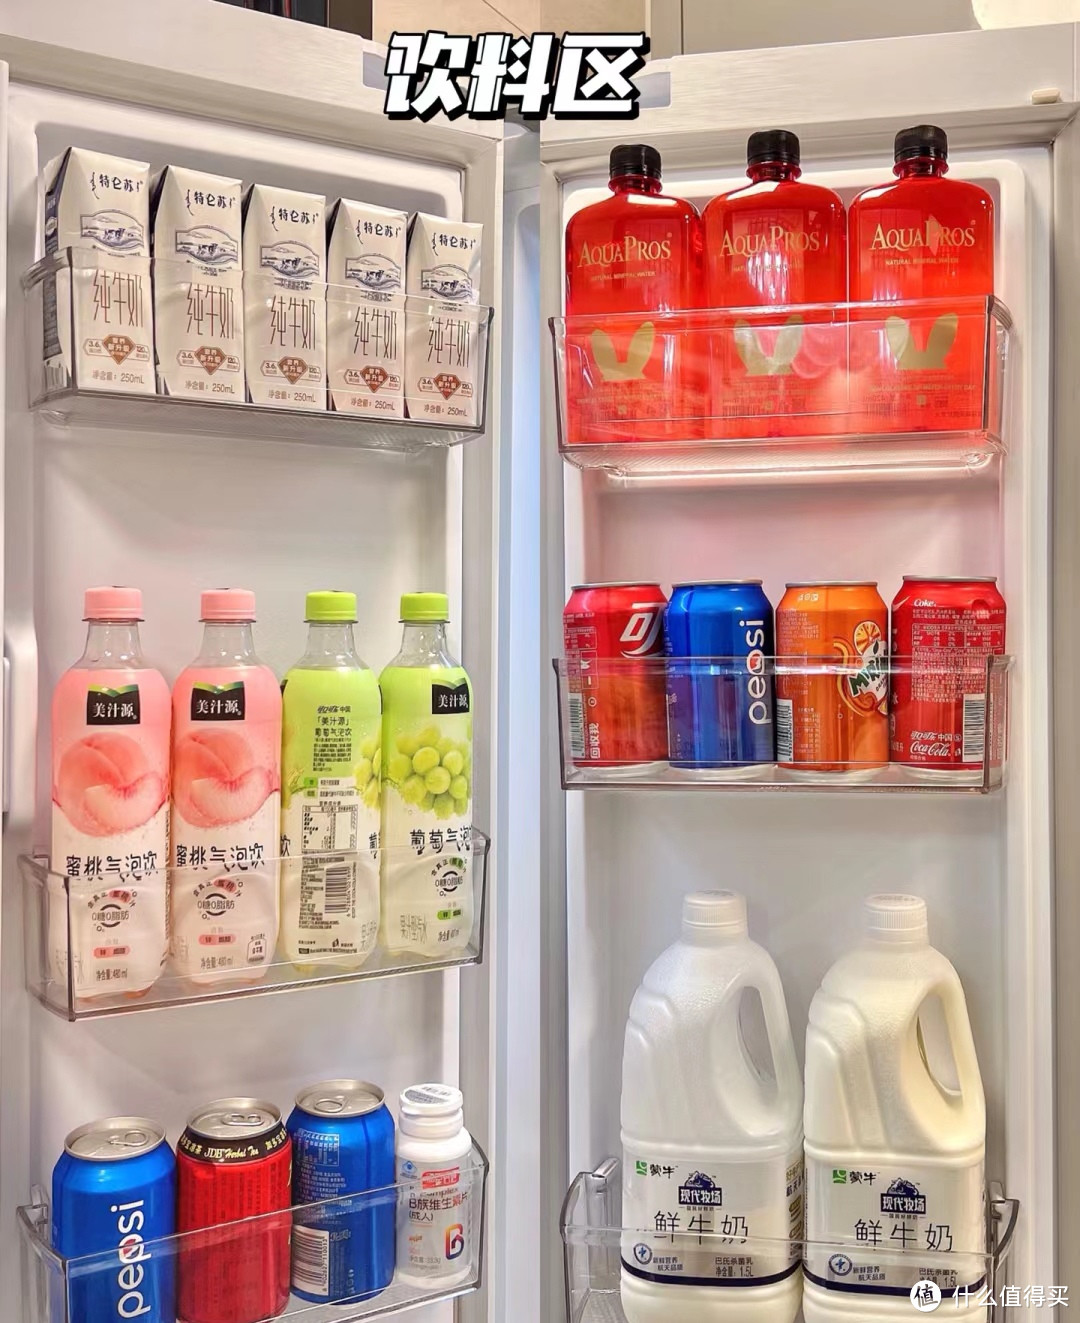 🌟 冰箱收纳 – 构建整洁有序的冰箱空间 🌟